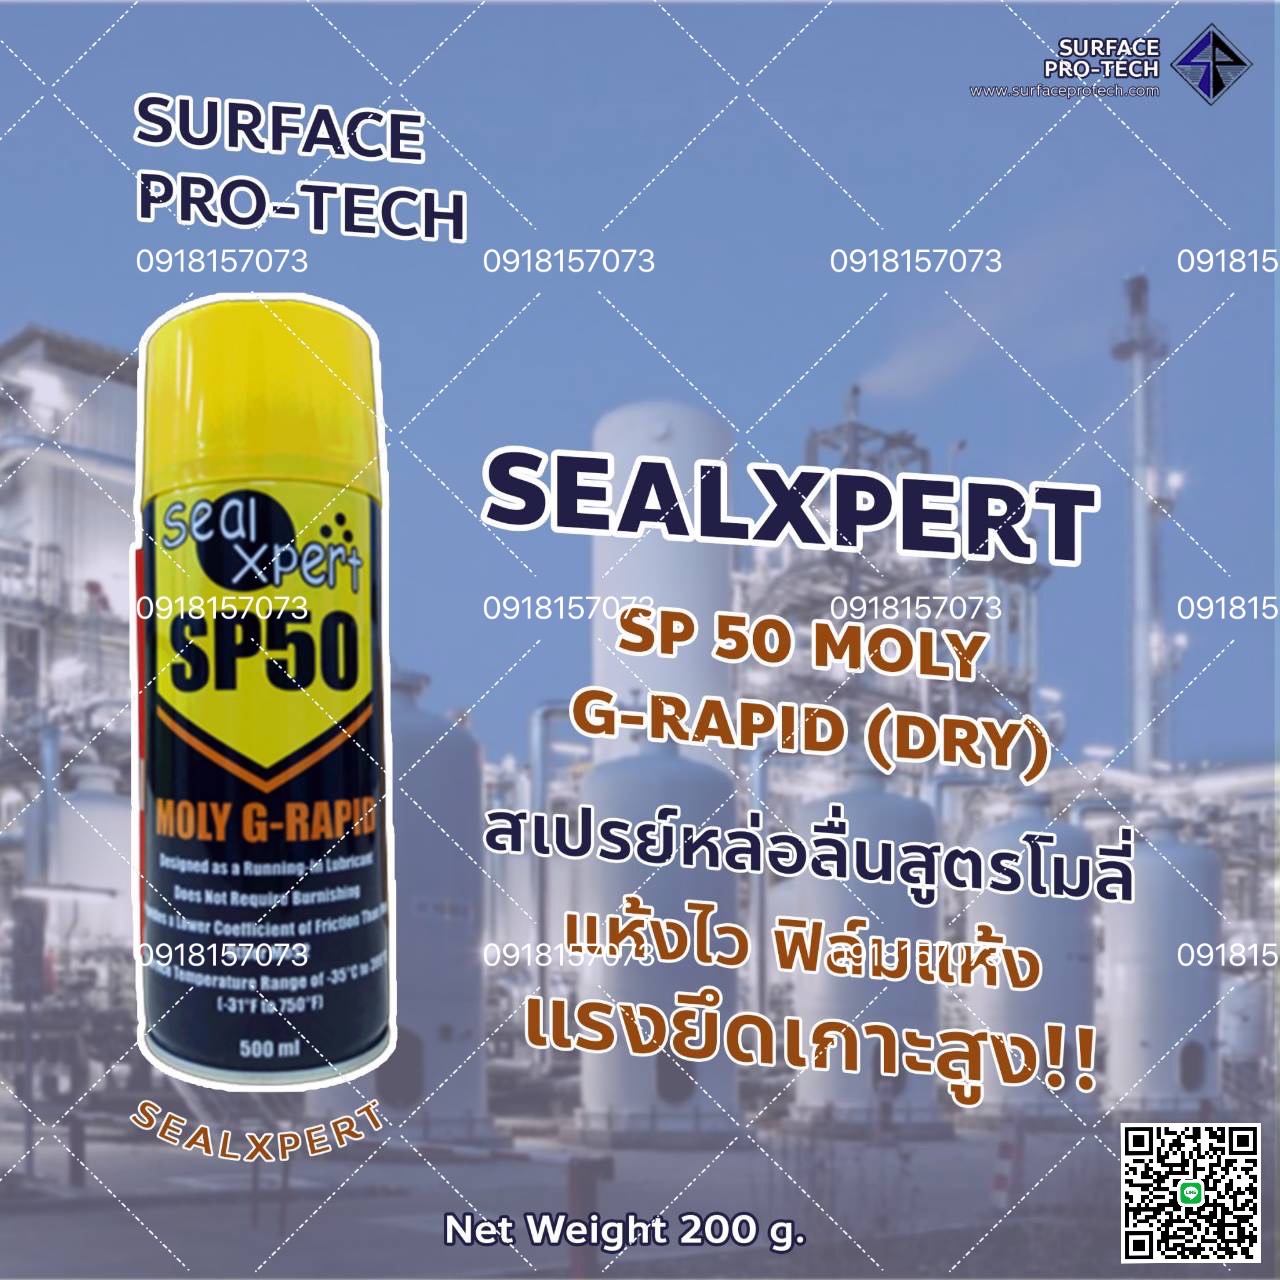 SealXpert SP50 MOLY G-RAPID SPRAY สเปรย์น้ำมันหล่อลื่น สูตรโมดินัมซัลไฟด์ แห้งไว ป้องกันการยึด>>สอบถามราคาพิเศษได้ที่0918157073ค่ะ<< รูปที่ 1